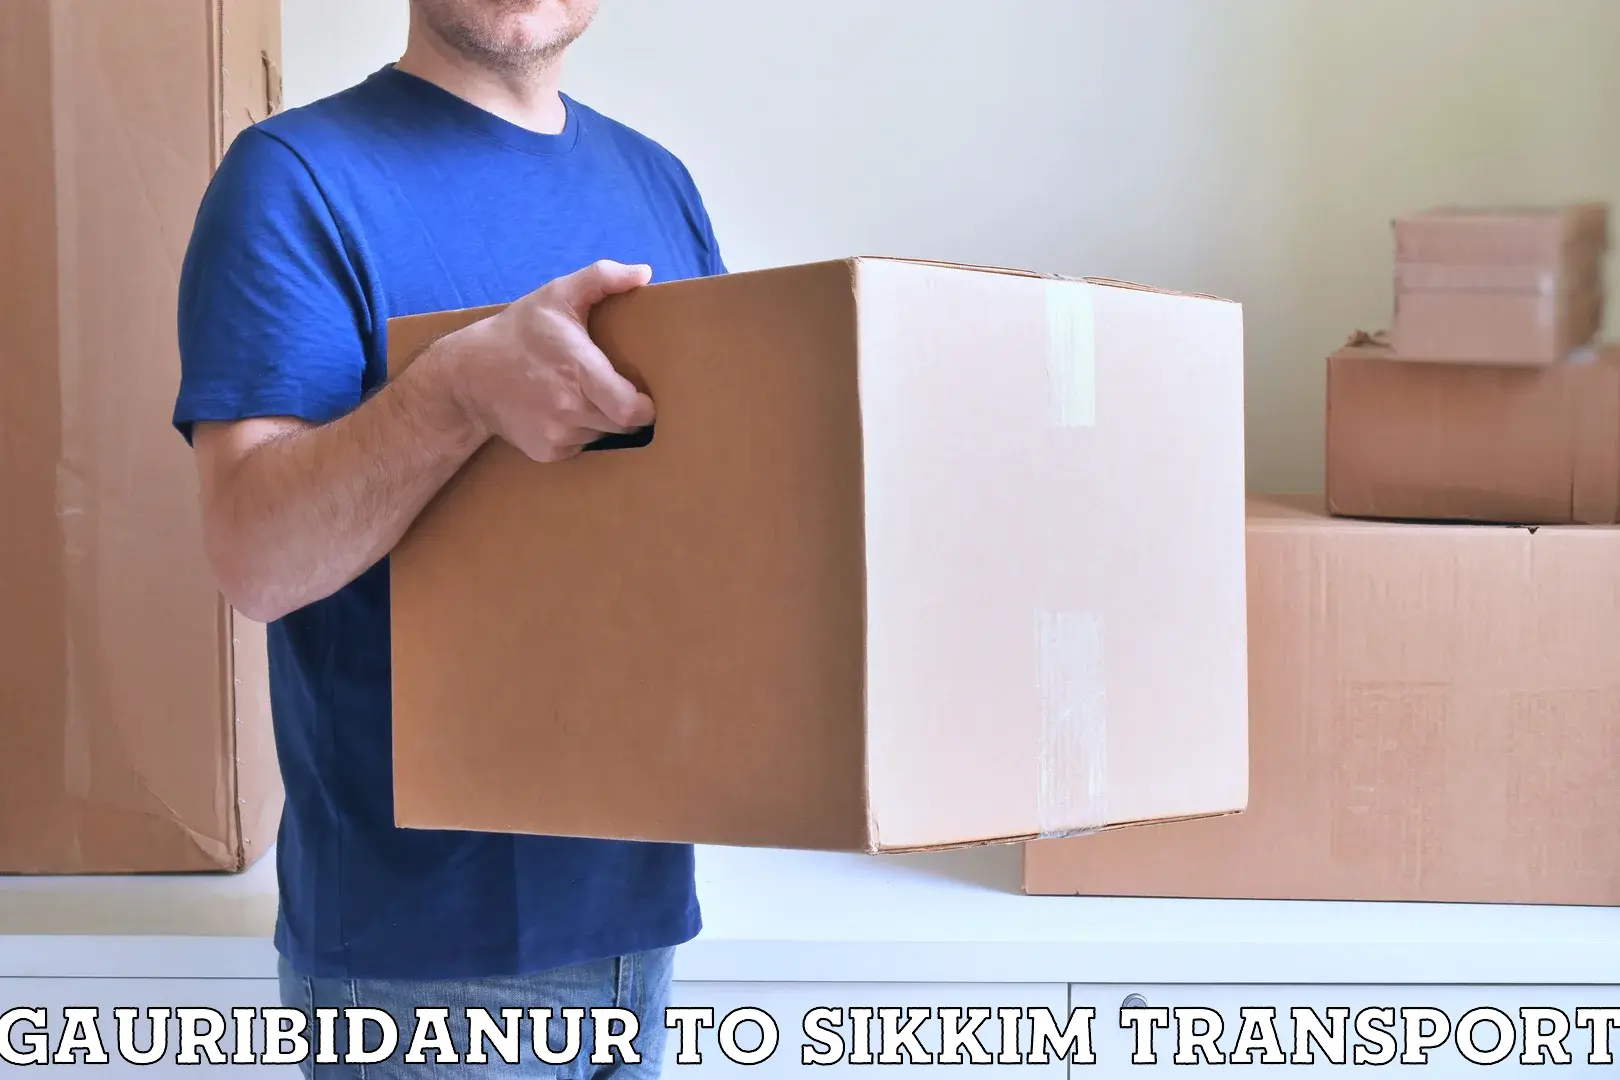 Furniture transport service Gauribidanur to East Sikkim